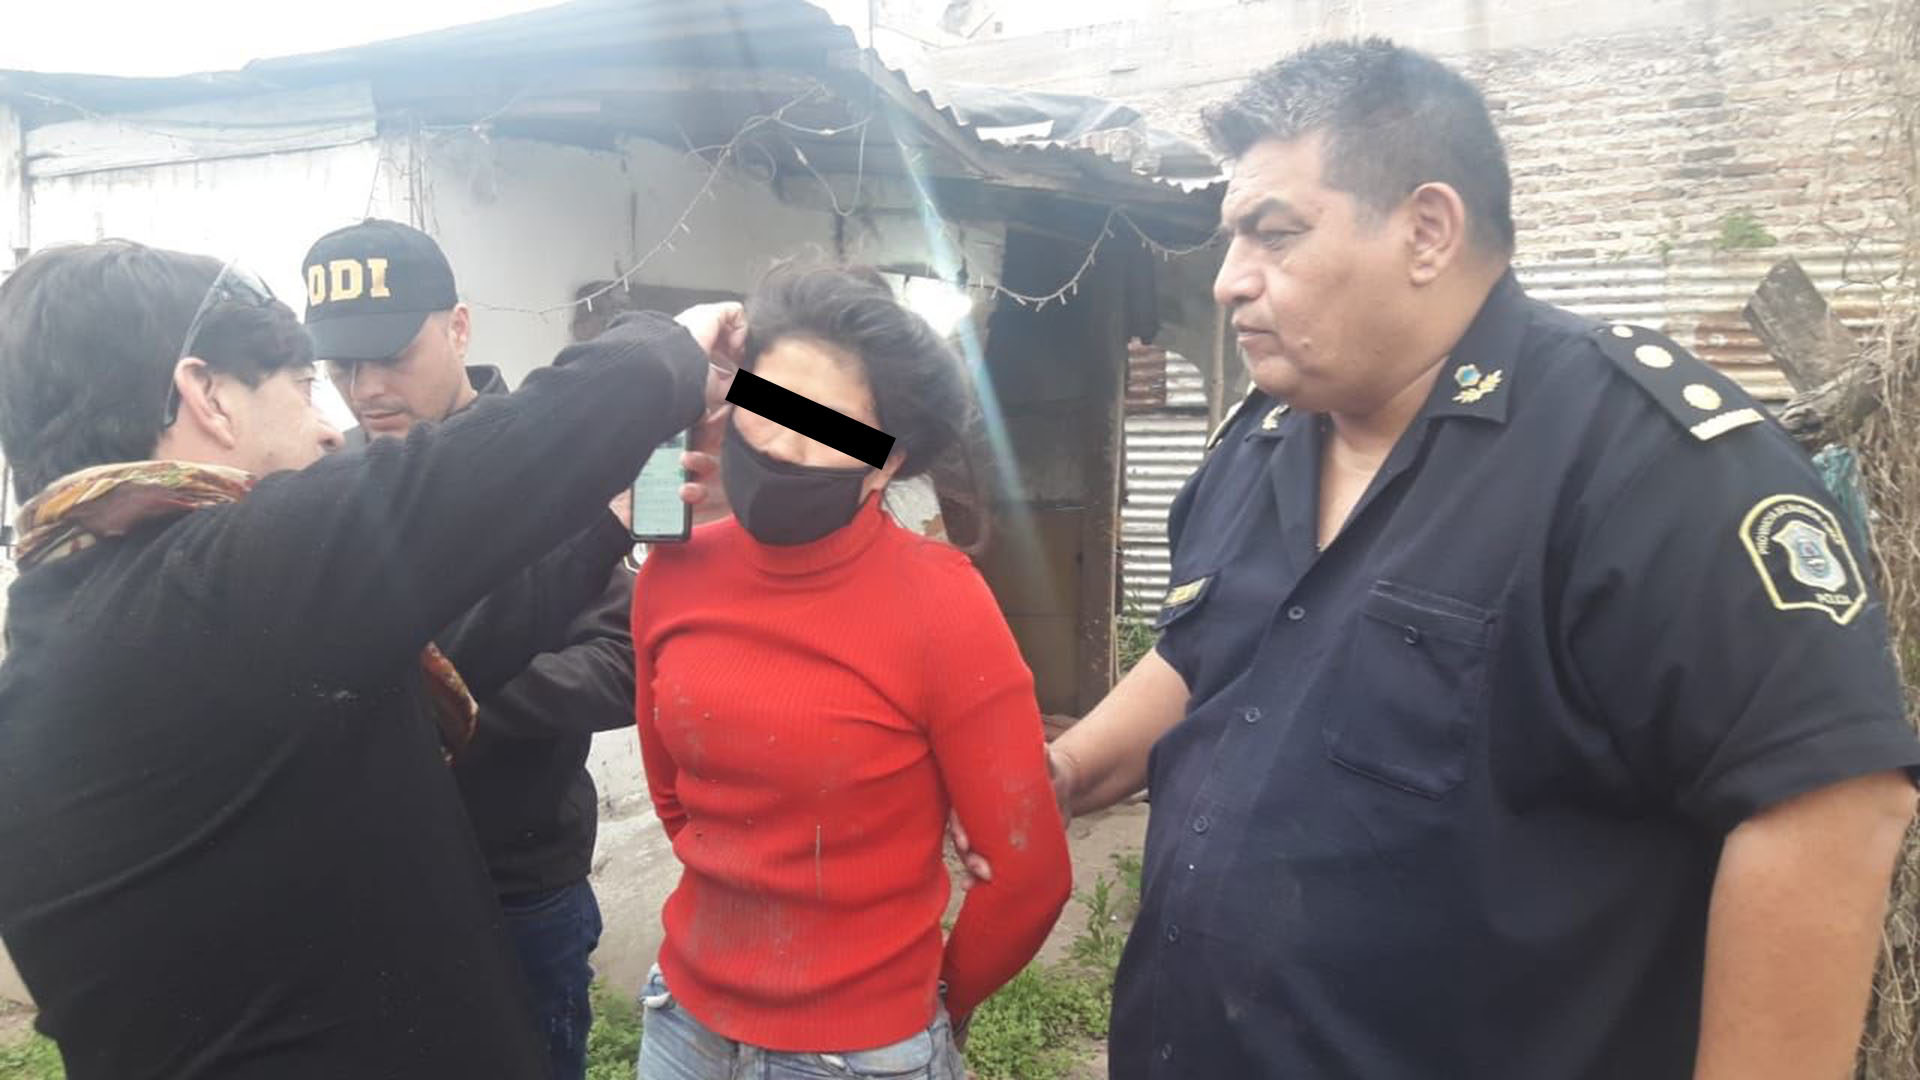 La madre del bebé al que prendieron fuego y mataron en Rafael Castillo dijo que una de las detenidas “se reía” al atacarla